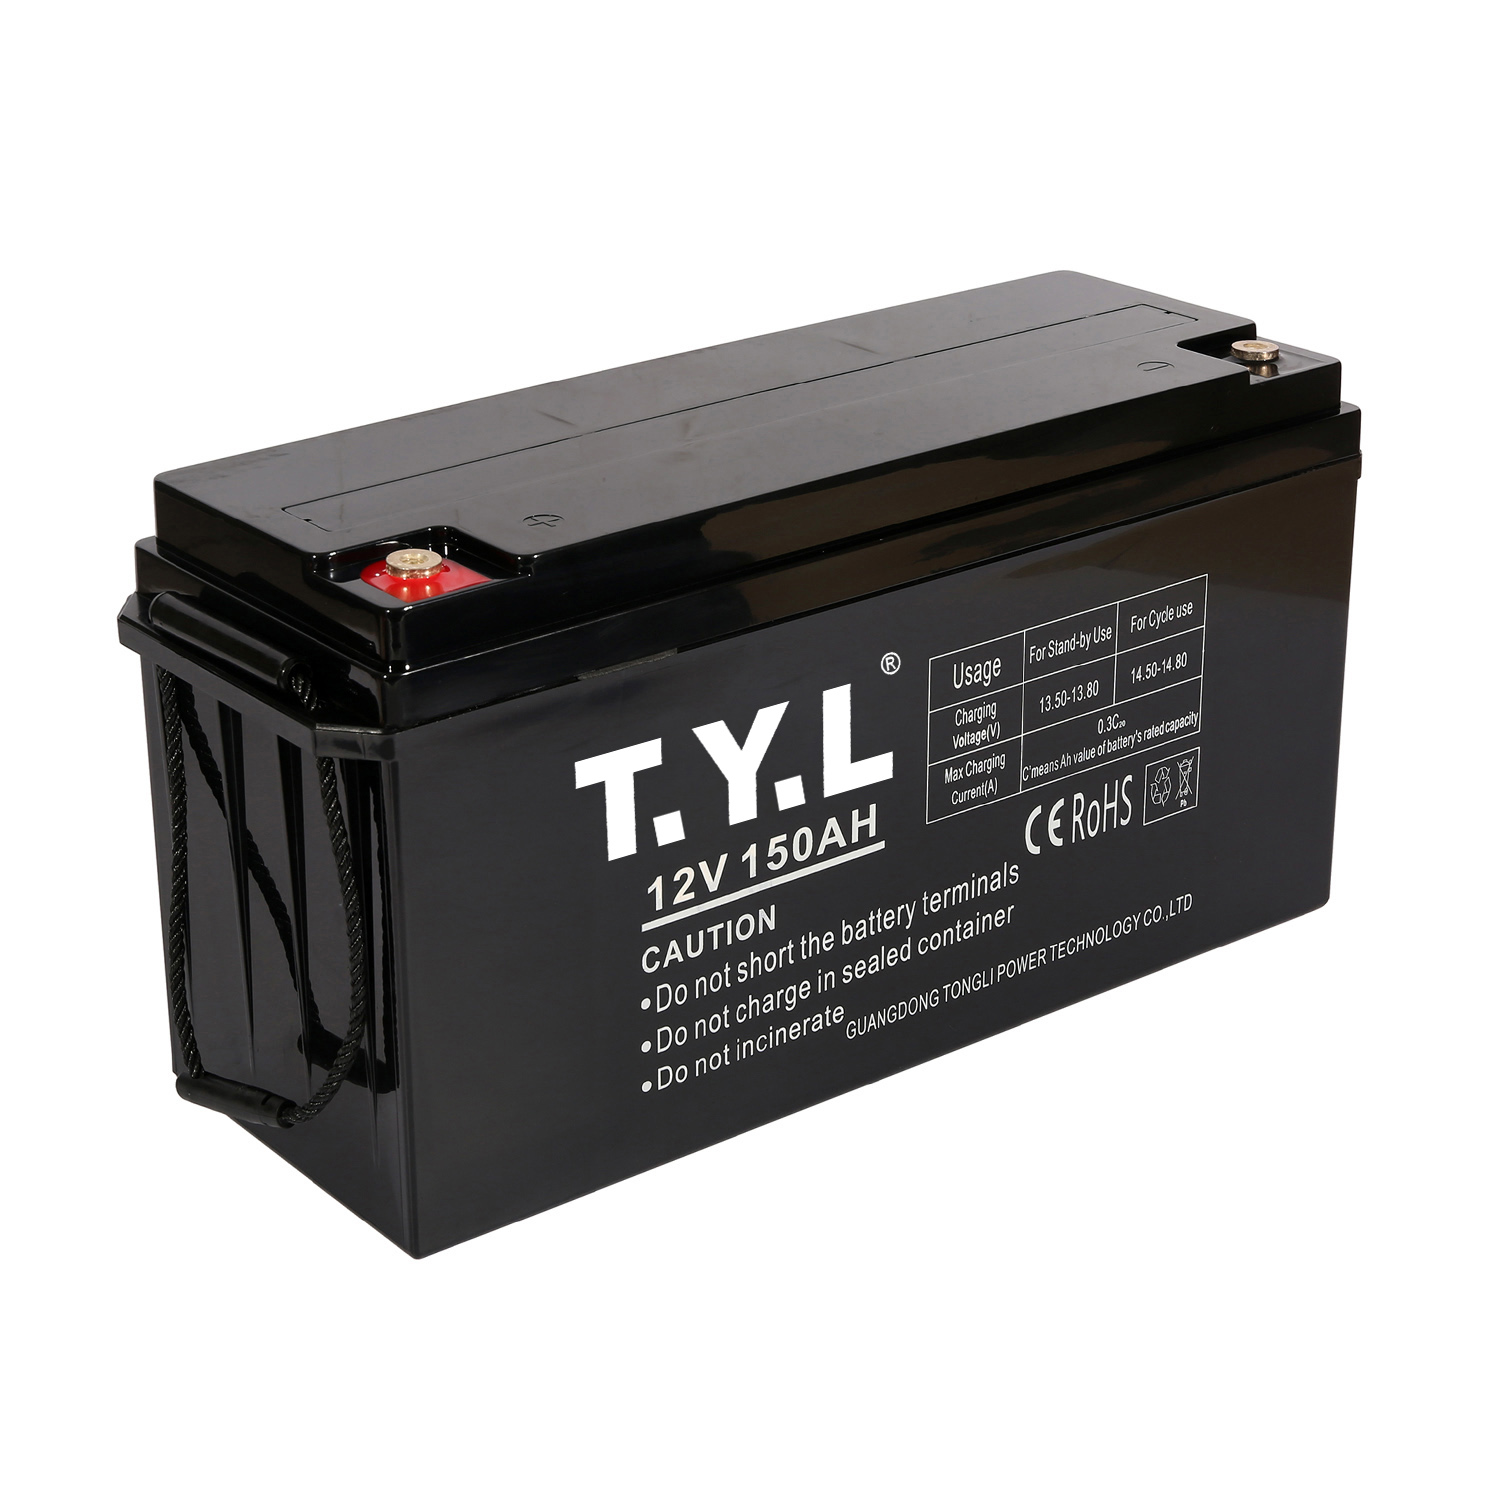 Batería de almacenamiento duradera de gran tamaño 12V150AH para sistemas eléctricos